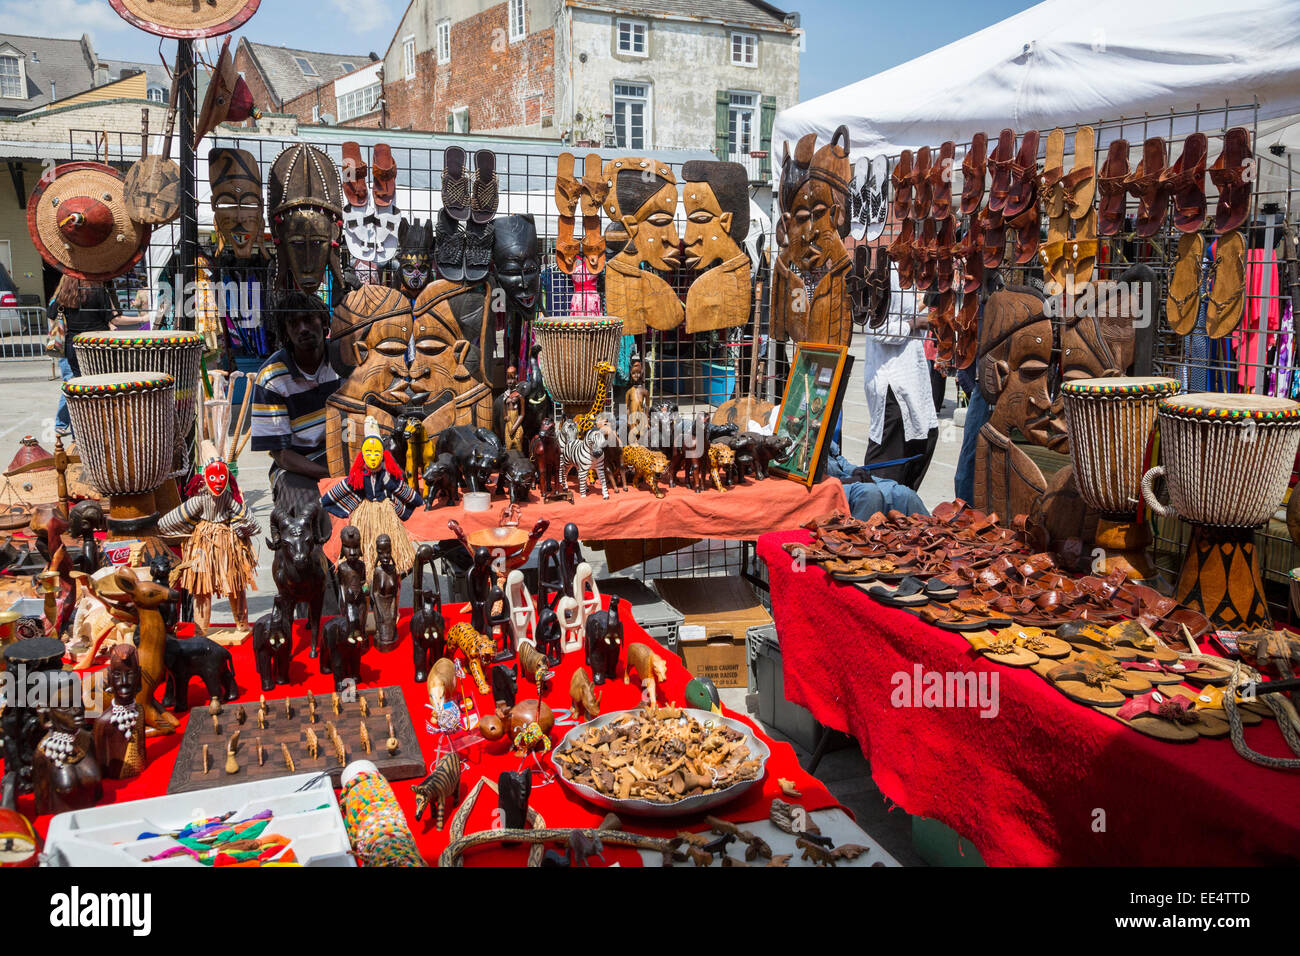 Quartiere Francese, New Orleans, in Louisiana. Africana di sculture in legno, sandali e tamburi per la vendita sul mercato francese. Foto Stock